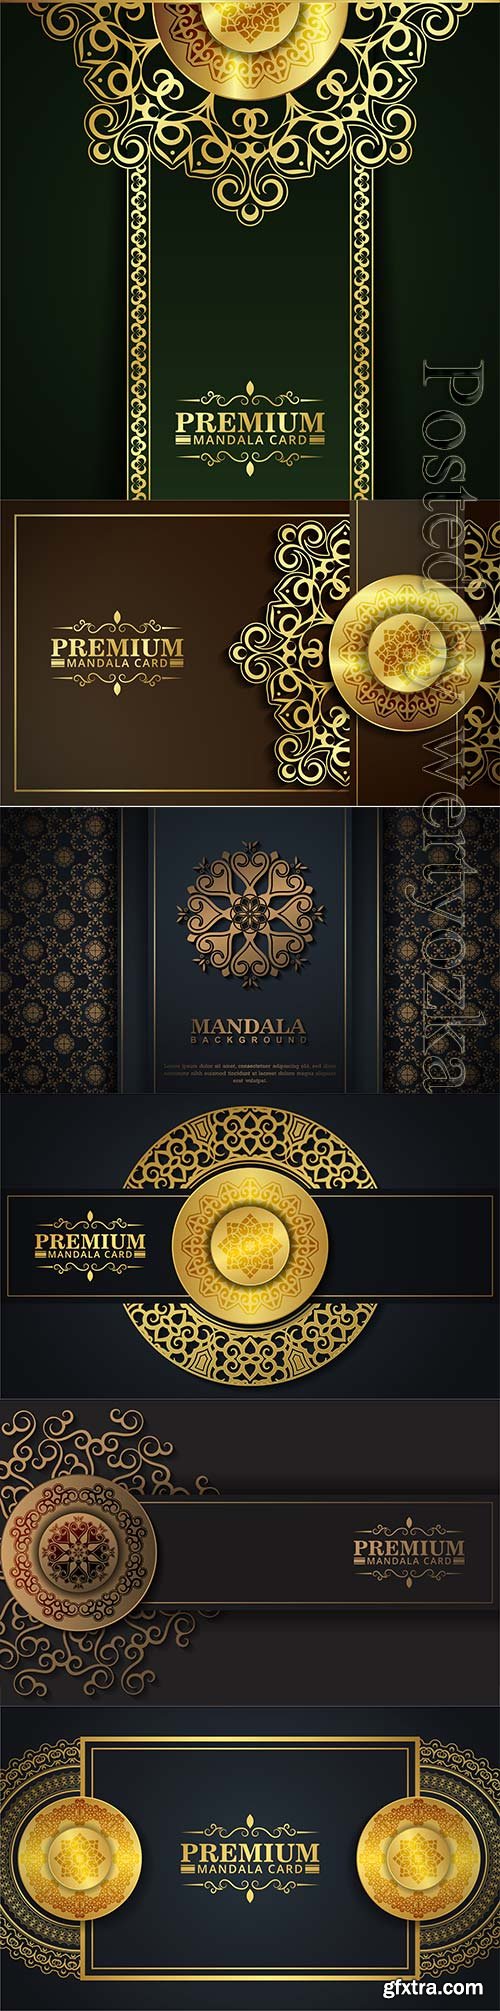 Luxury dark mandala card in vector